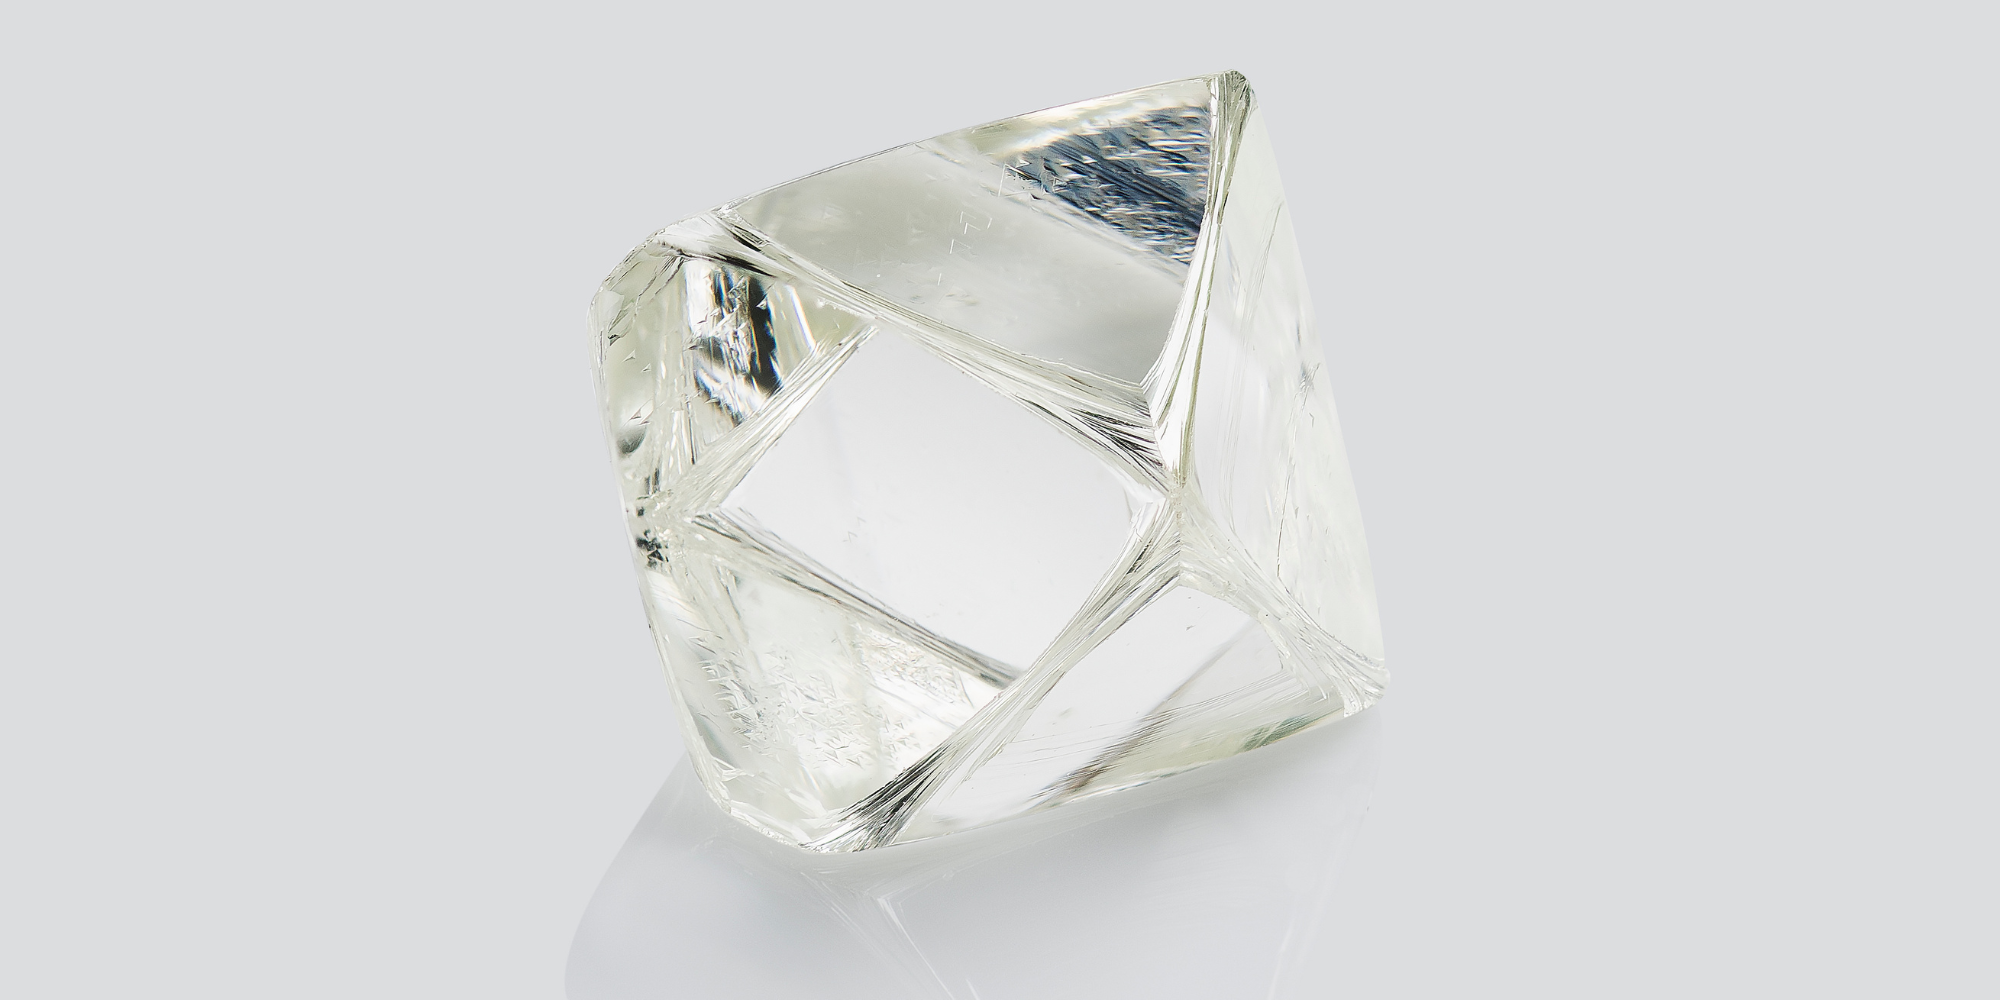 Die Bedeutung der Ethik bei Diamanten